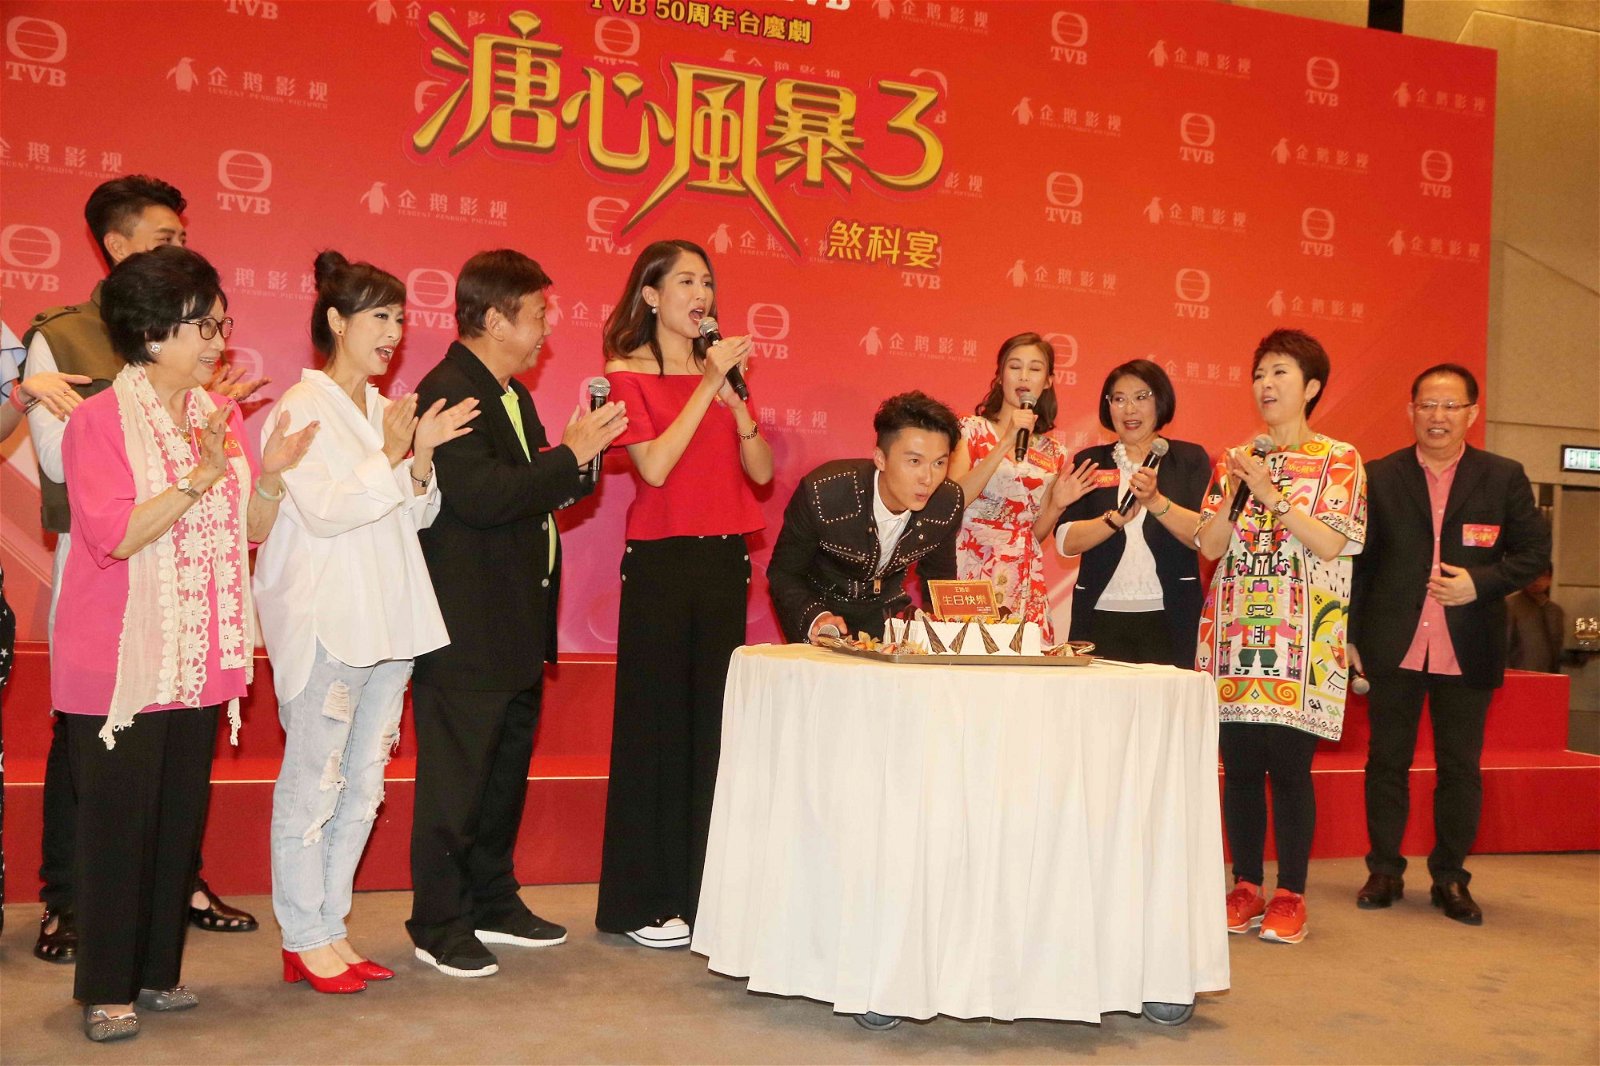 一班《溏心风暴3》演员，帮王浩信补庆生日。